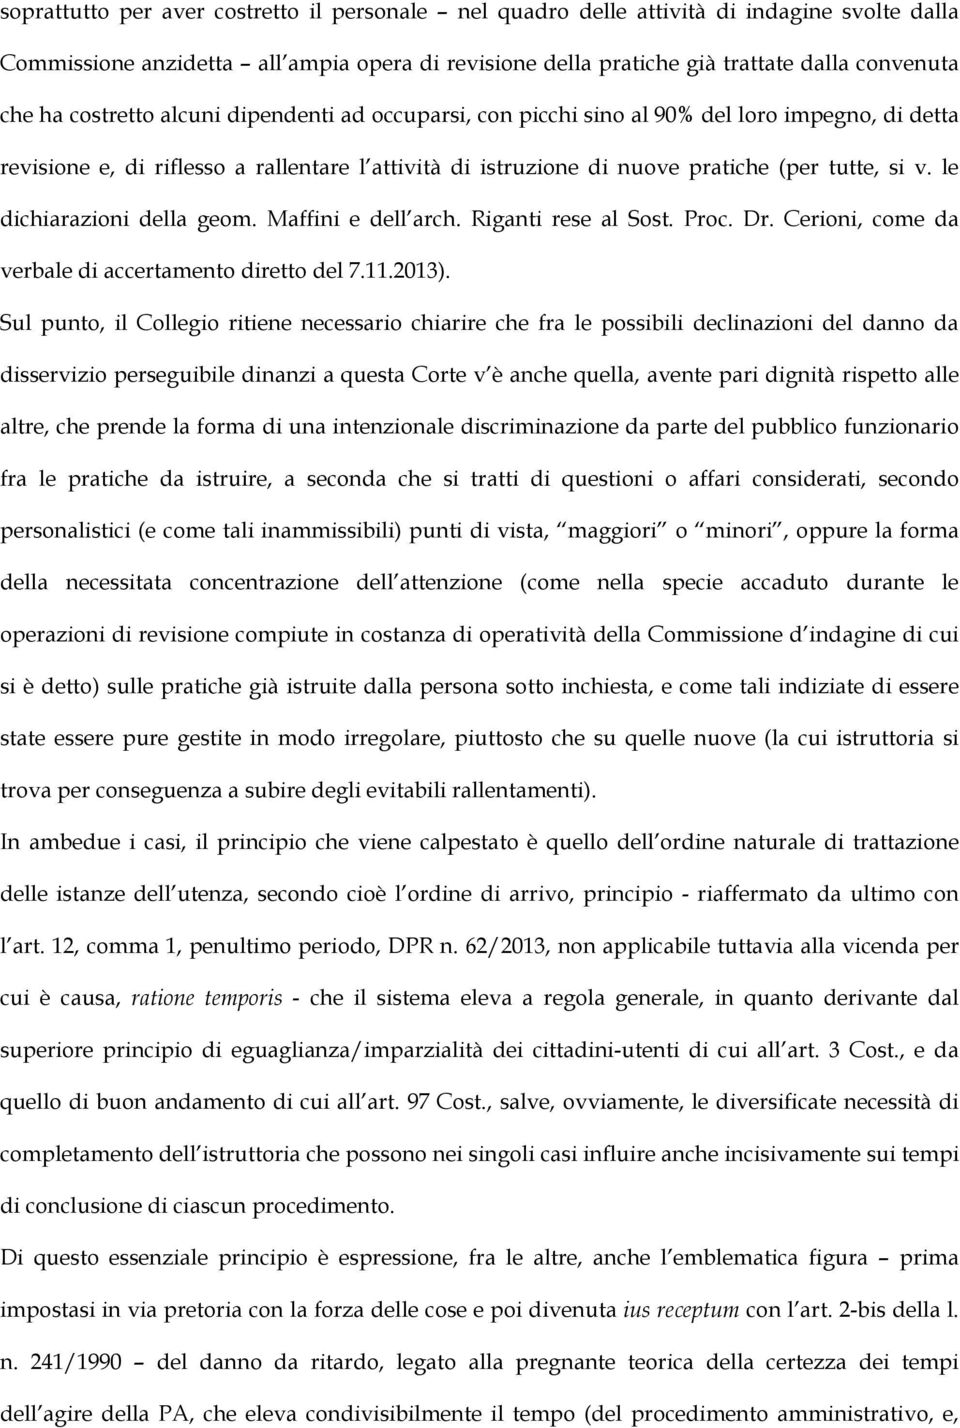 le dichiarazioni della geom. Maffini e dell arch. Riganti rese al Sost. Proc. Dr. Cerioni, come da verbale di accertamento diretto del 7.11.2013).